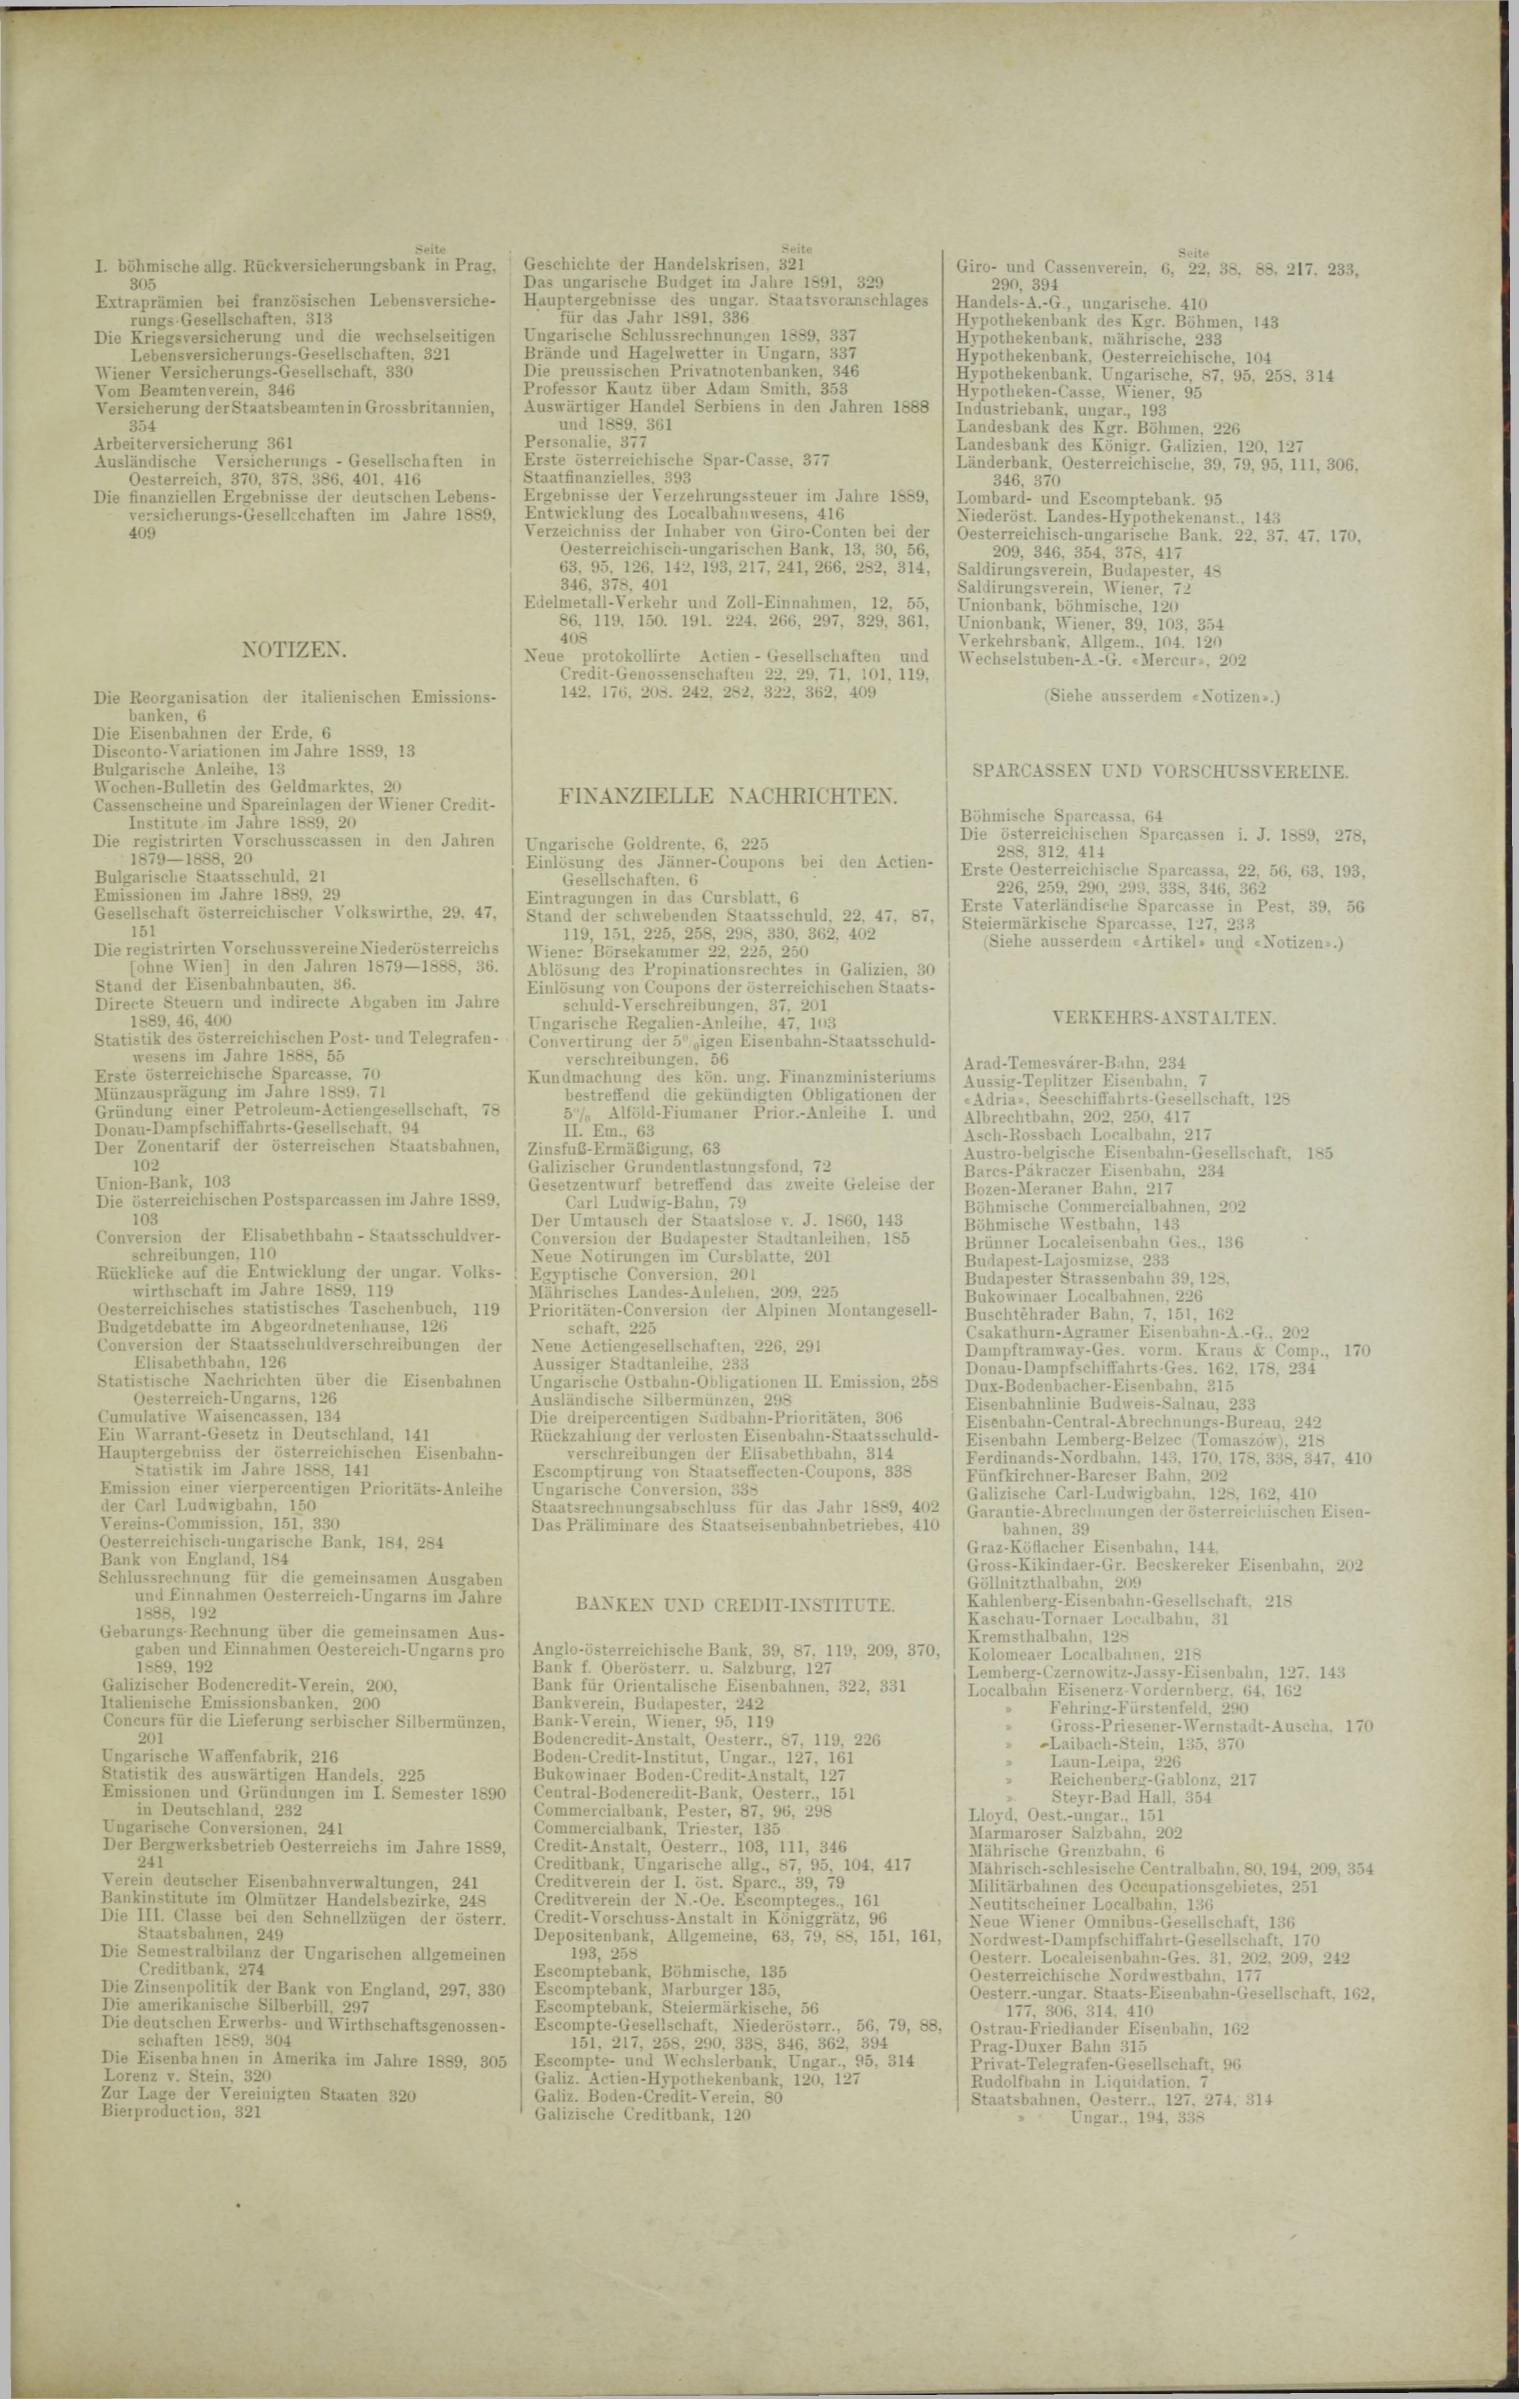 Der Tresor 10.07.1890 - Seite 11